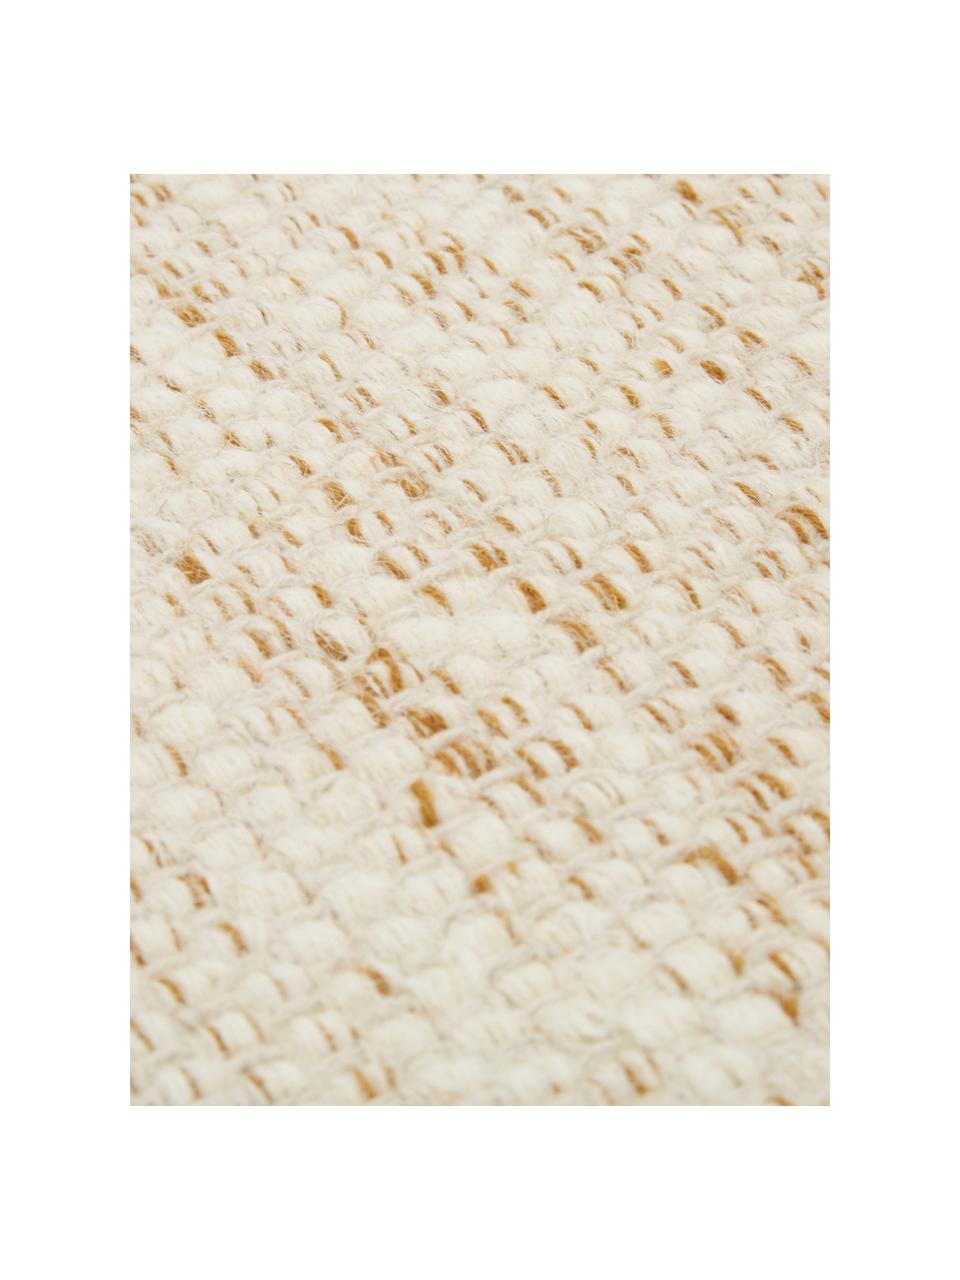 Handgewebter Wollläufer Lule mit Farbverlauf in Beige/Gelb, 70% Wolle, 30% Baumwolle, Ockergelb, Beige, 80 x 250 cm